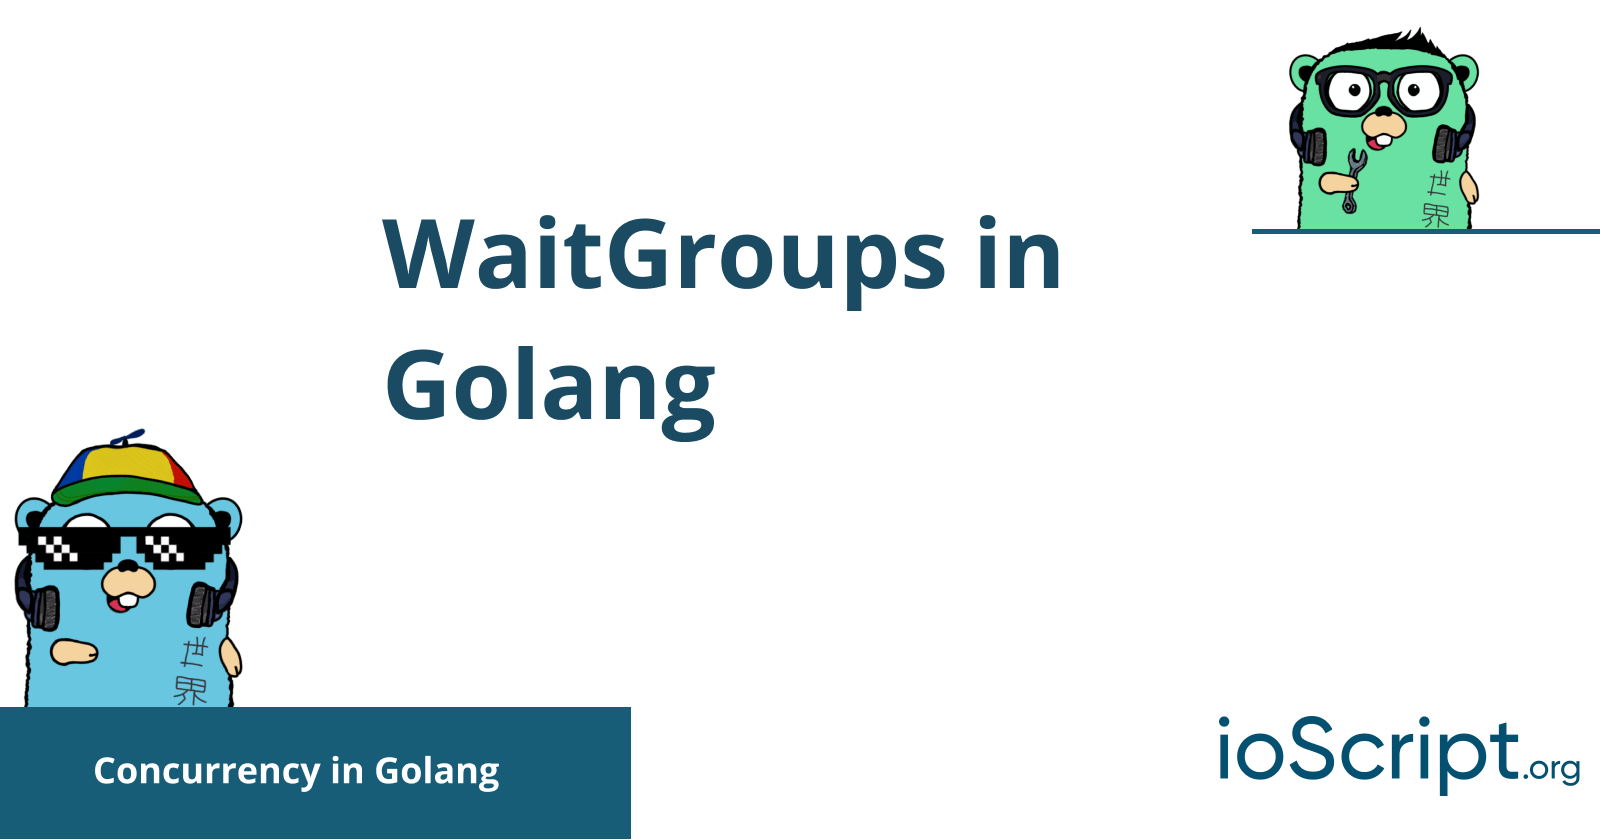 WaitGroups in Golang